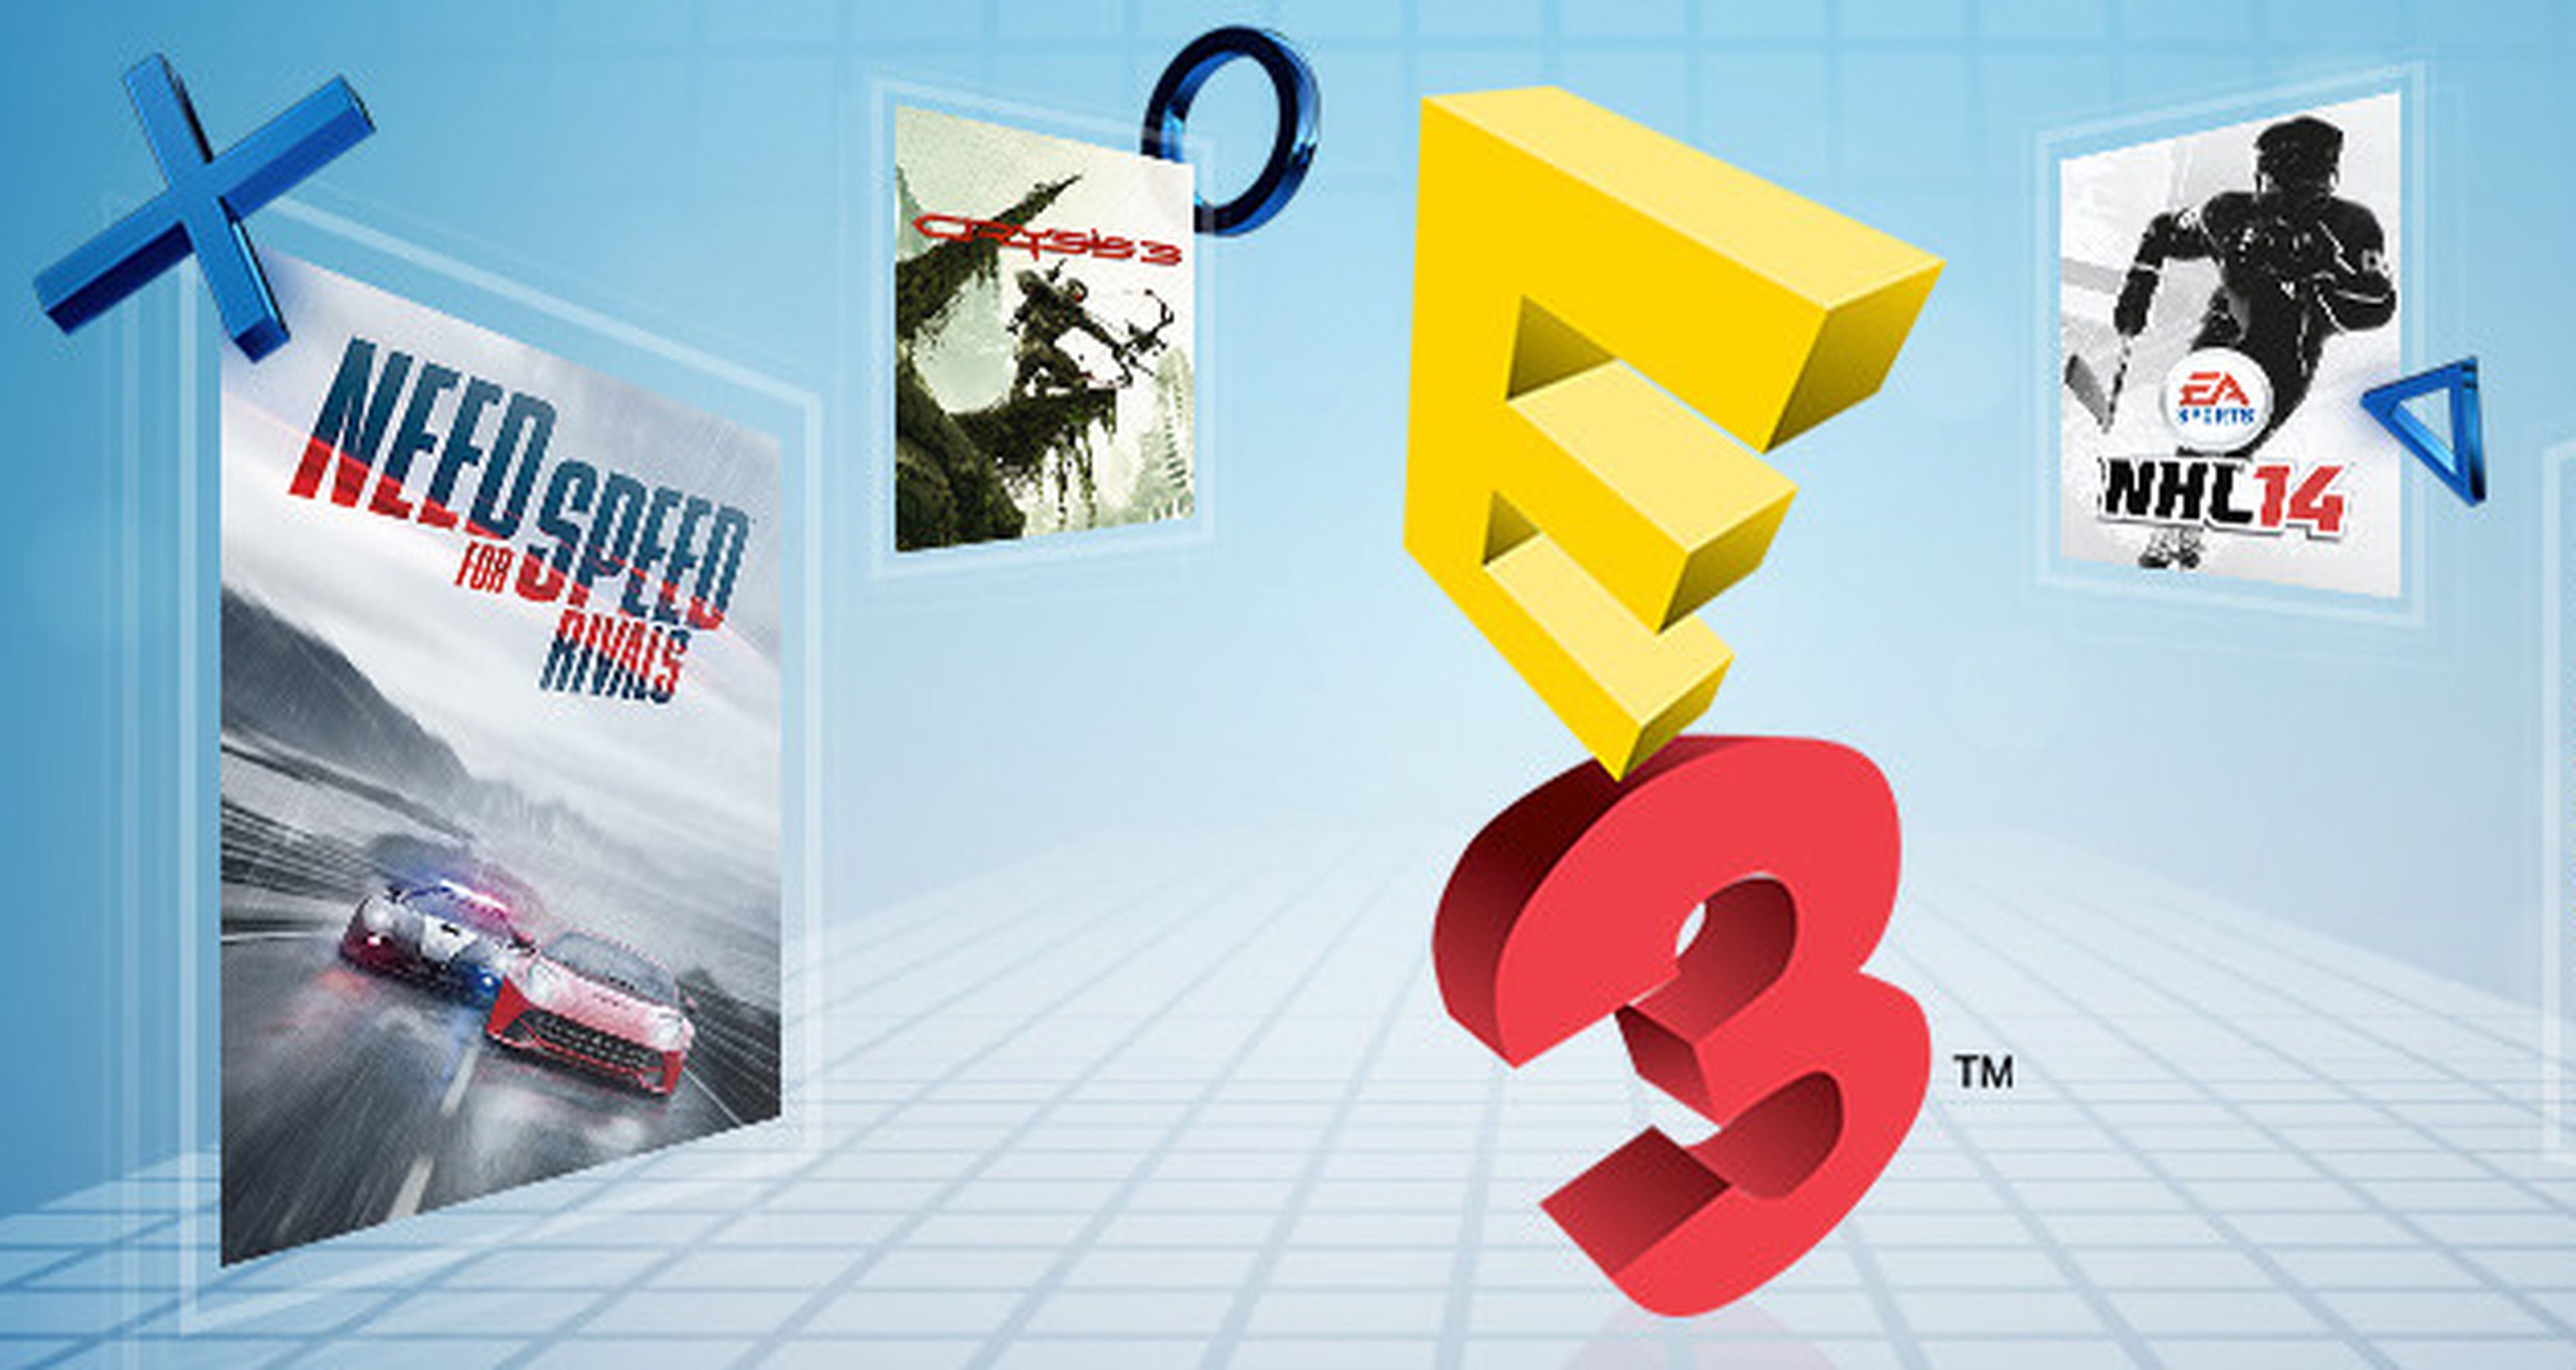 Descuentos pre-E3 2014 en PSN Store